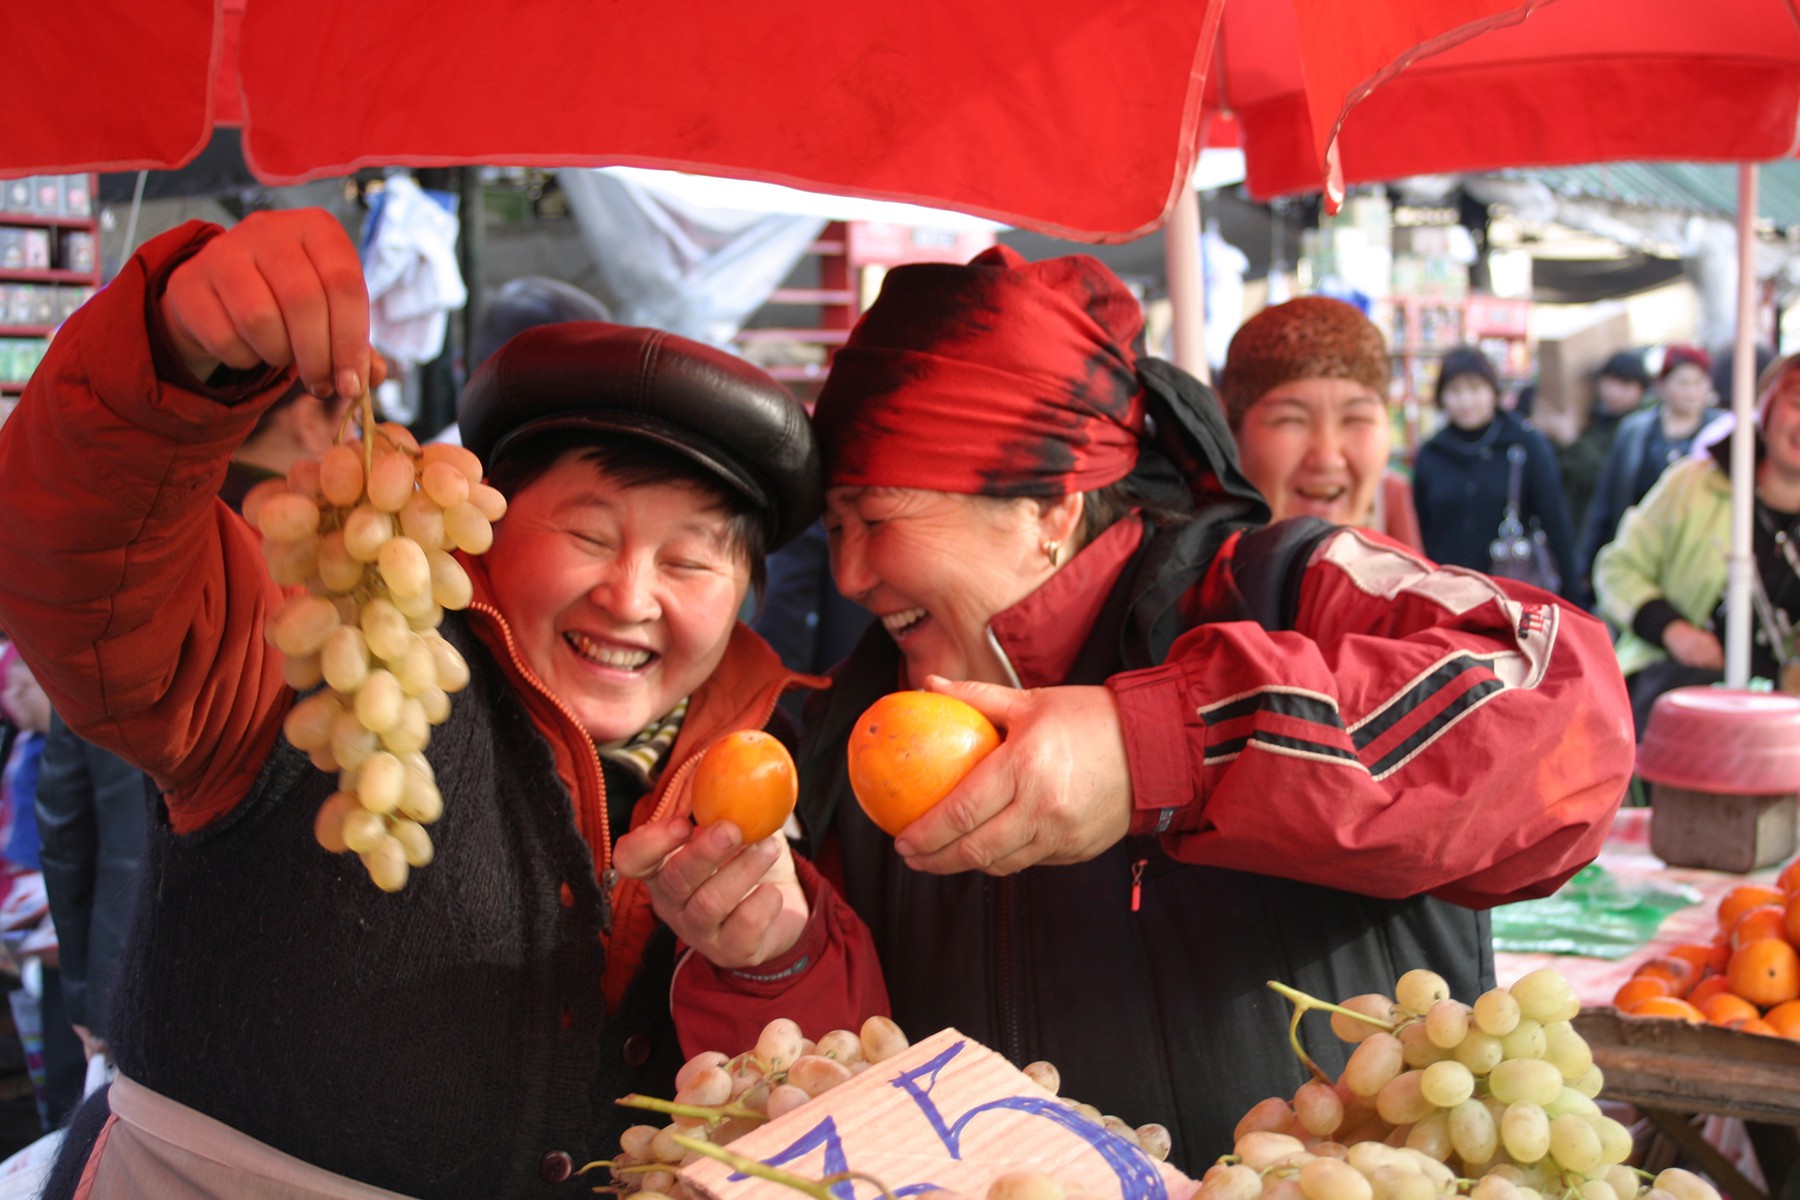 Introbild für das Projekt Fotografie aus Kirgistan